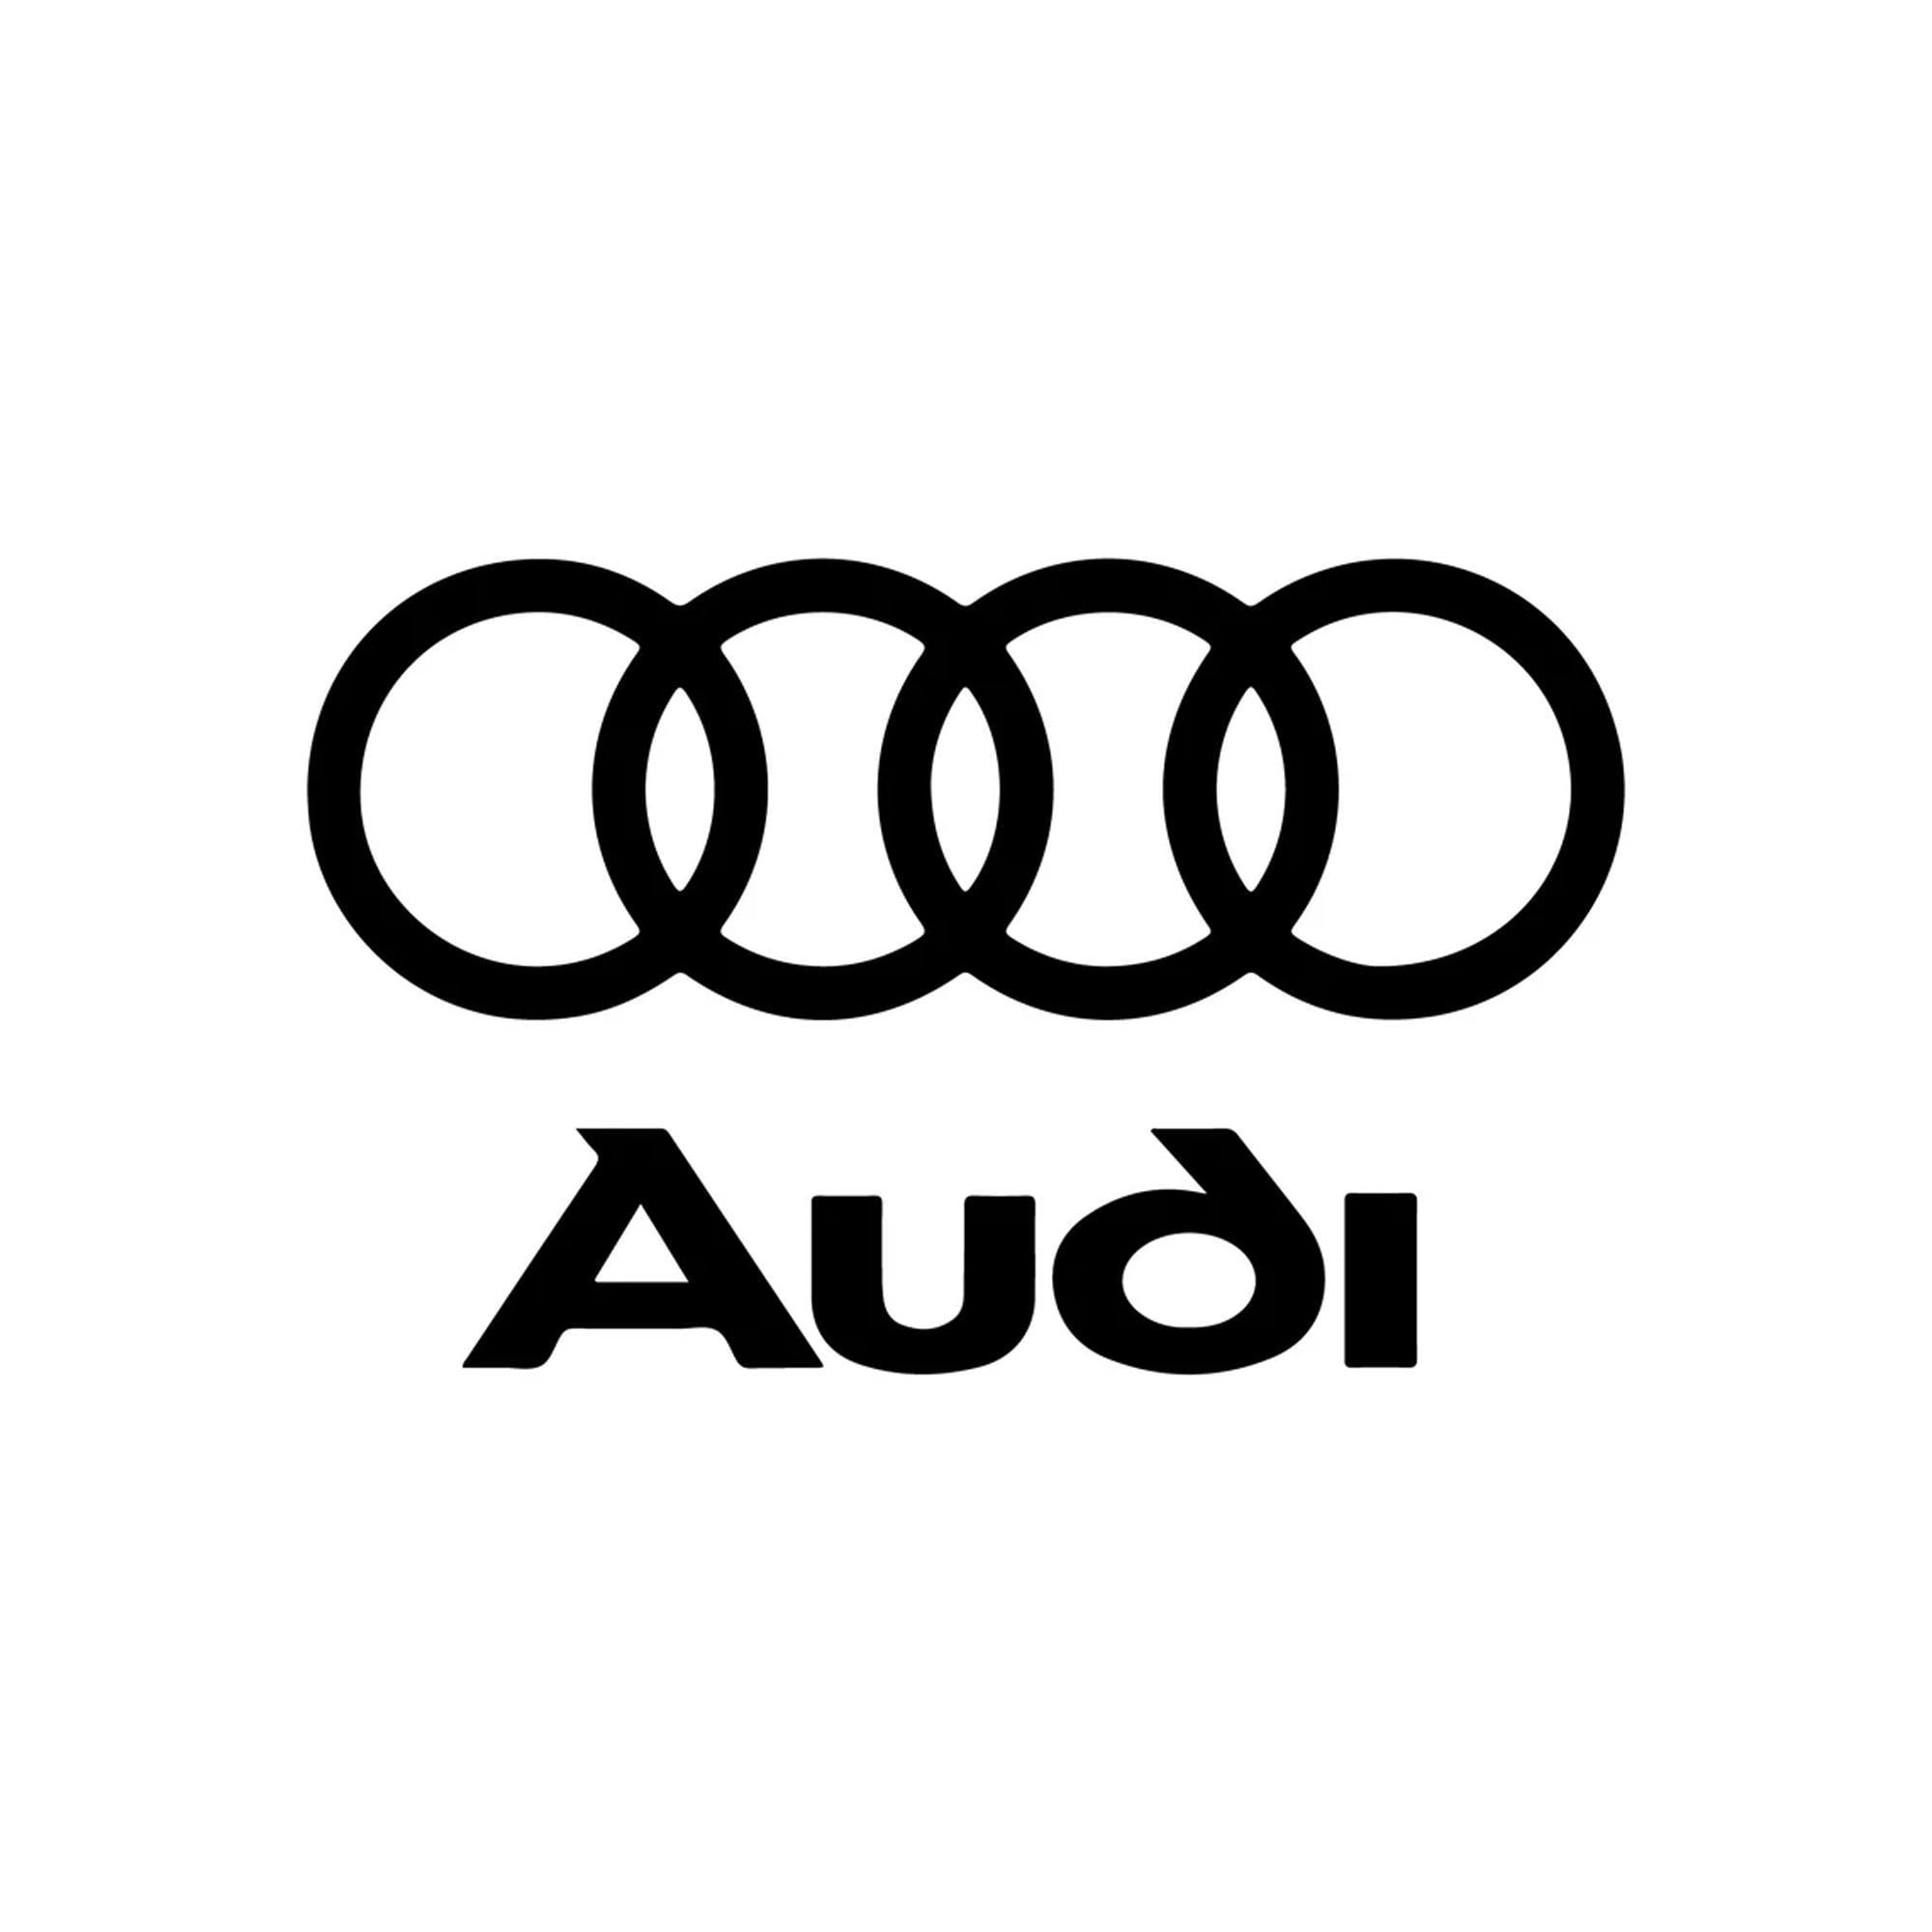 Audi Decal/Sticker - Profile Cut